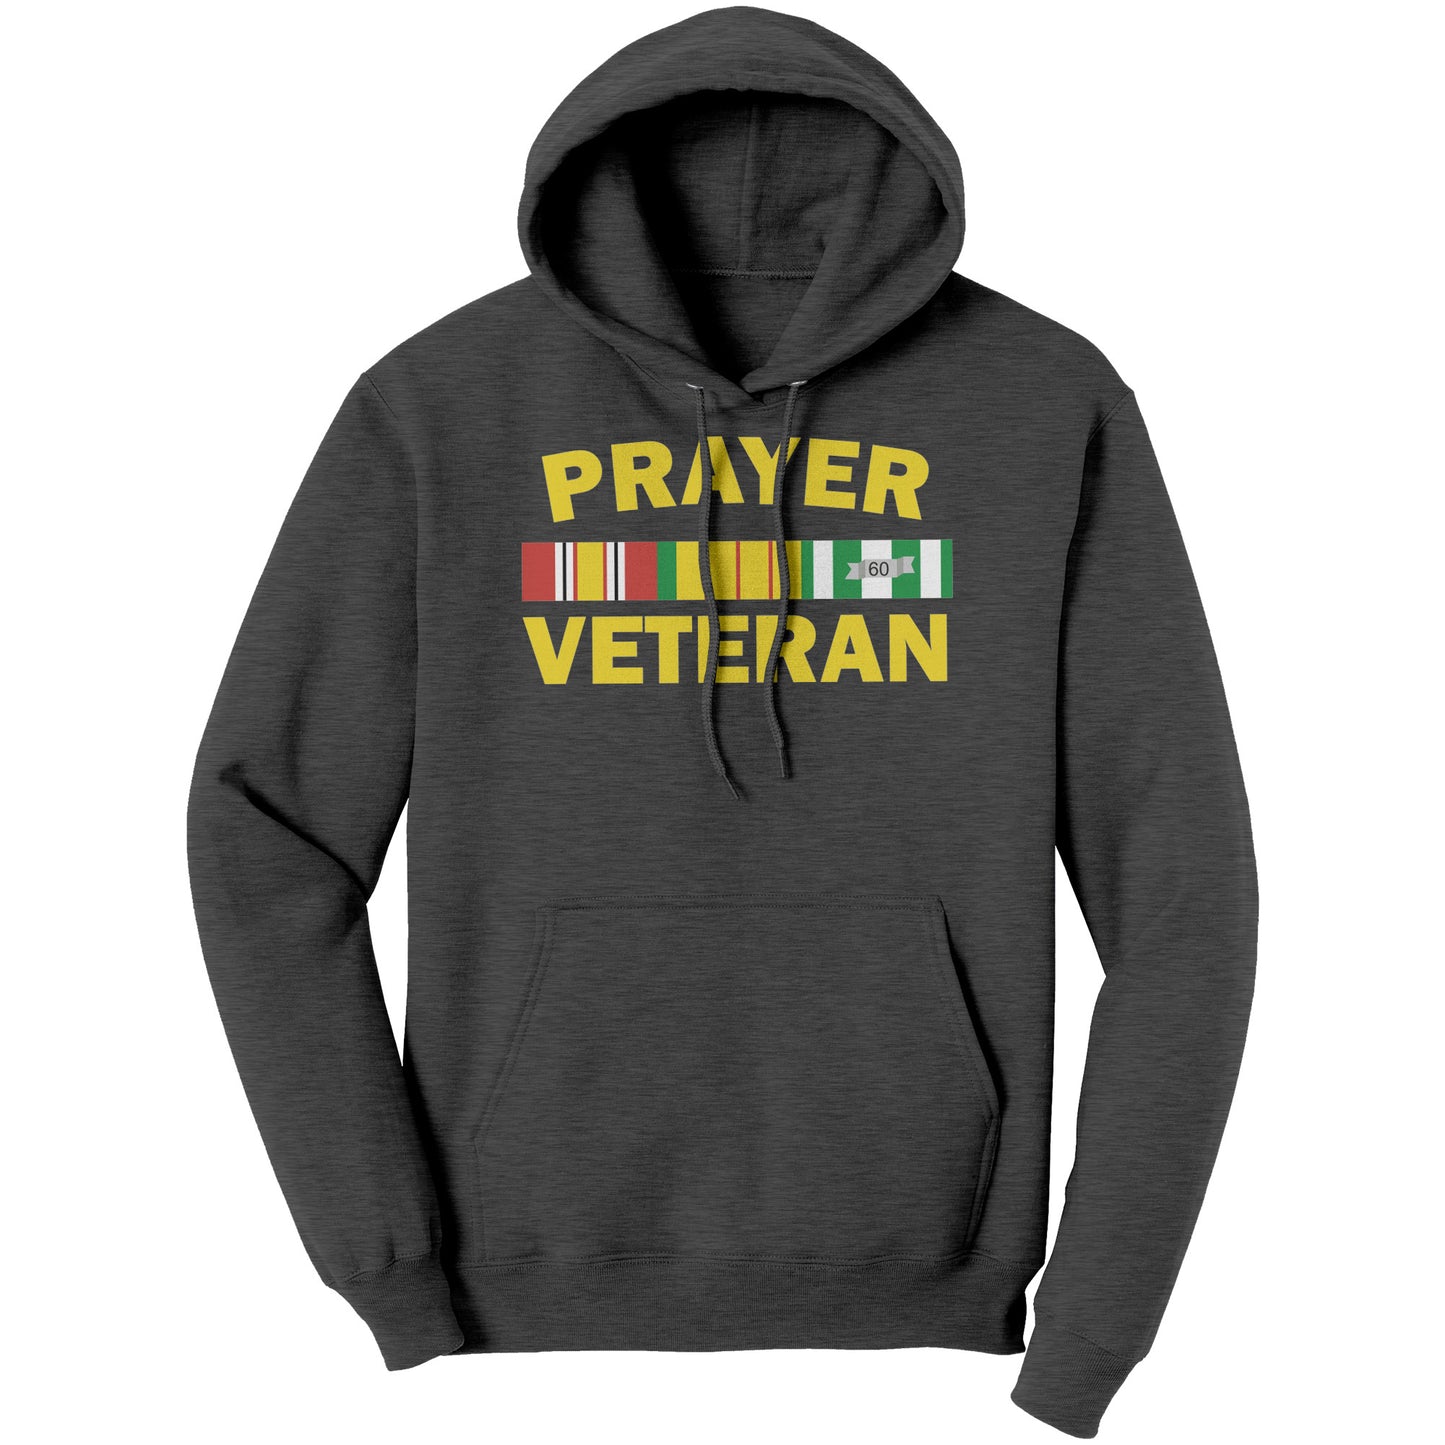 Prayer Veteran Hoodie